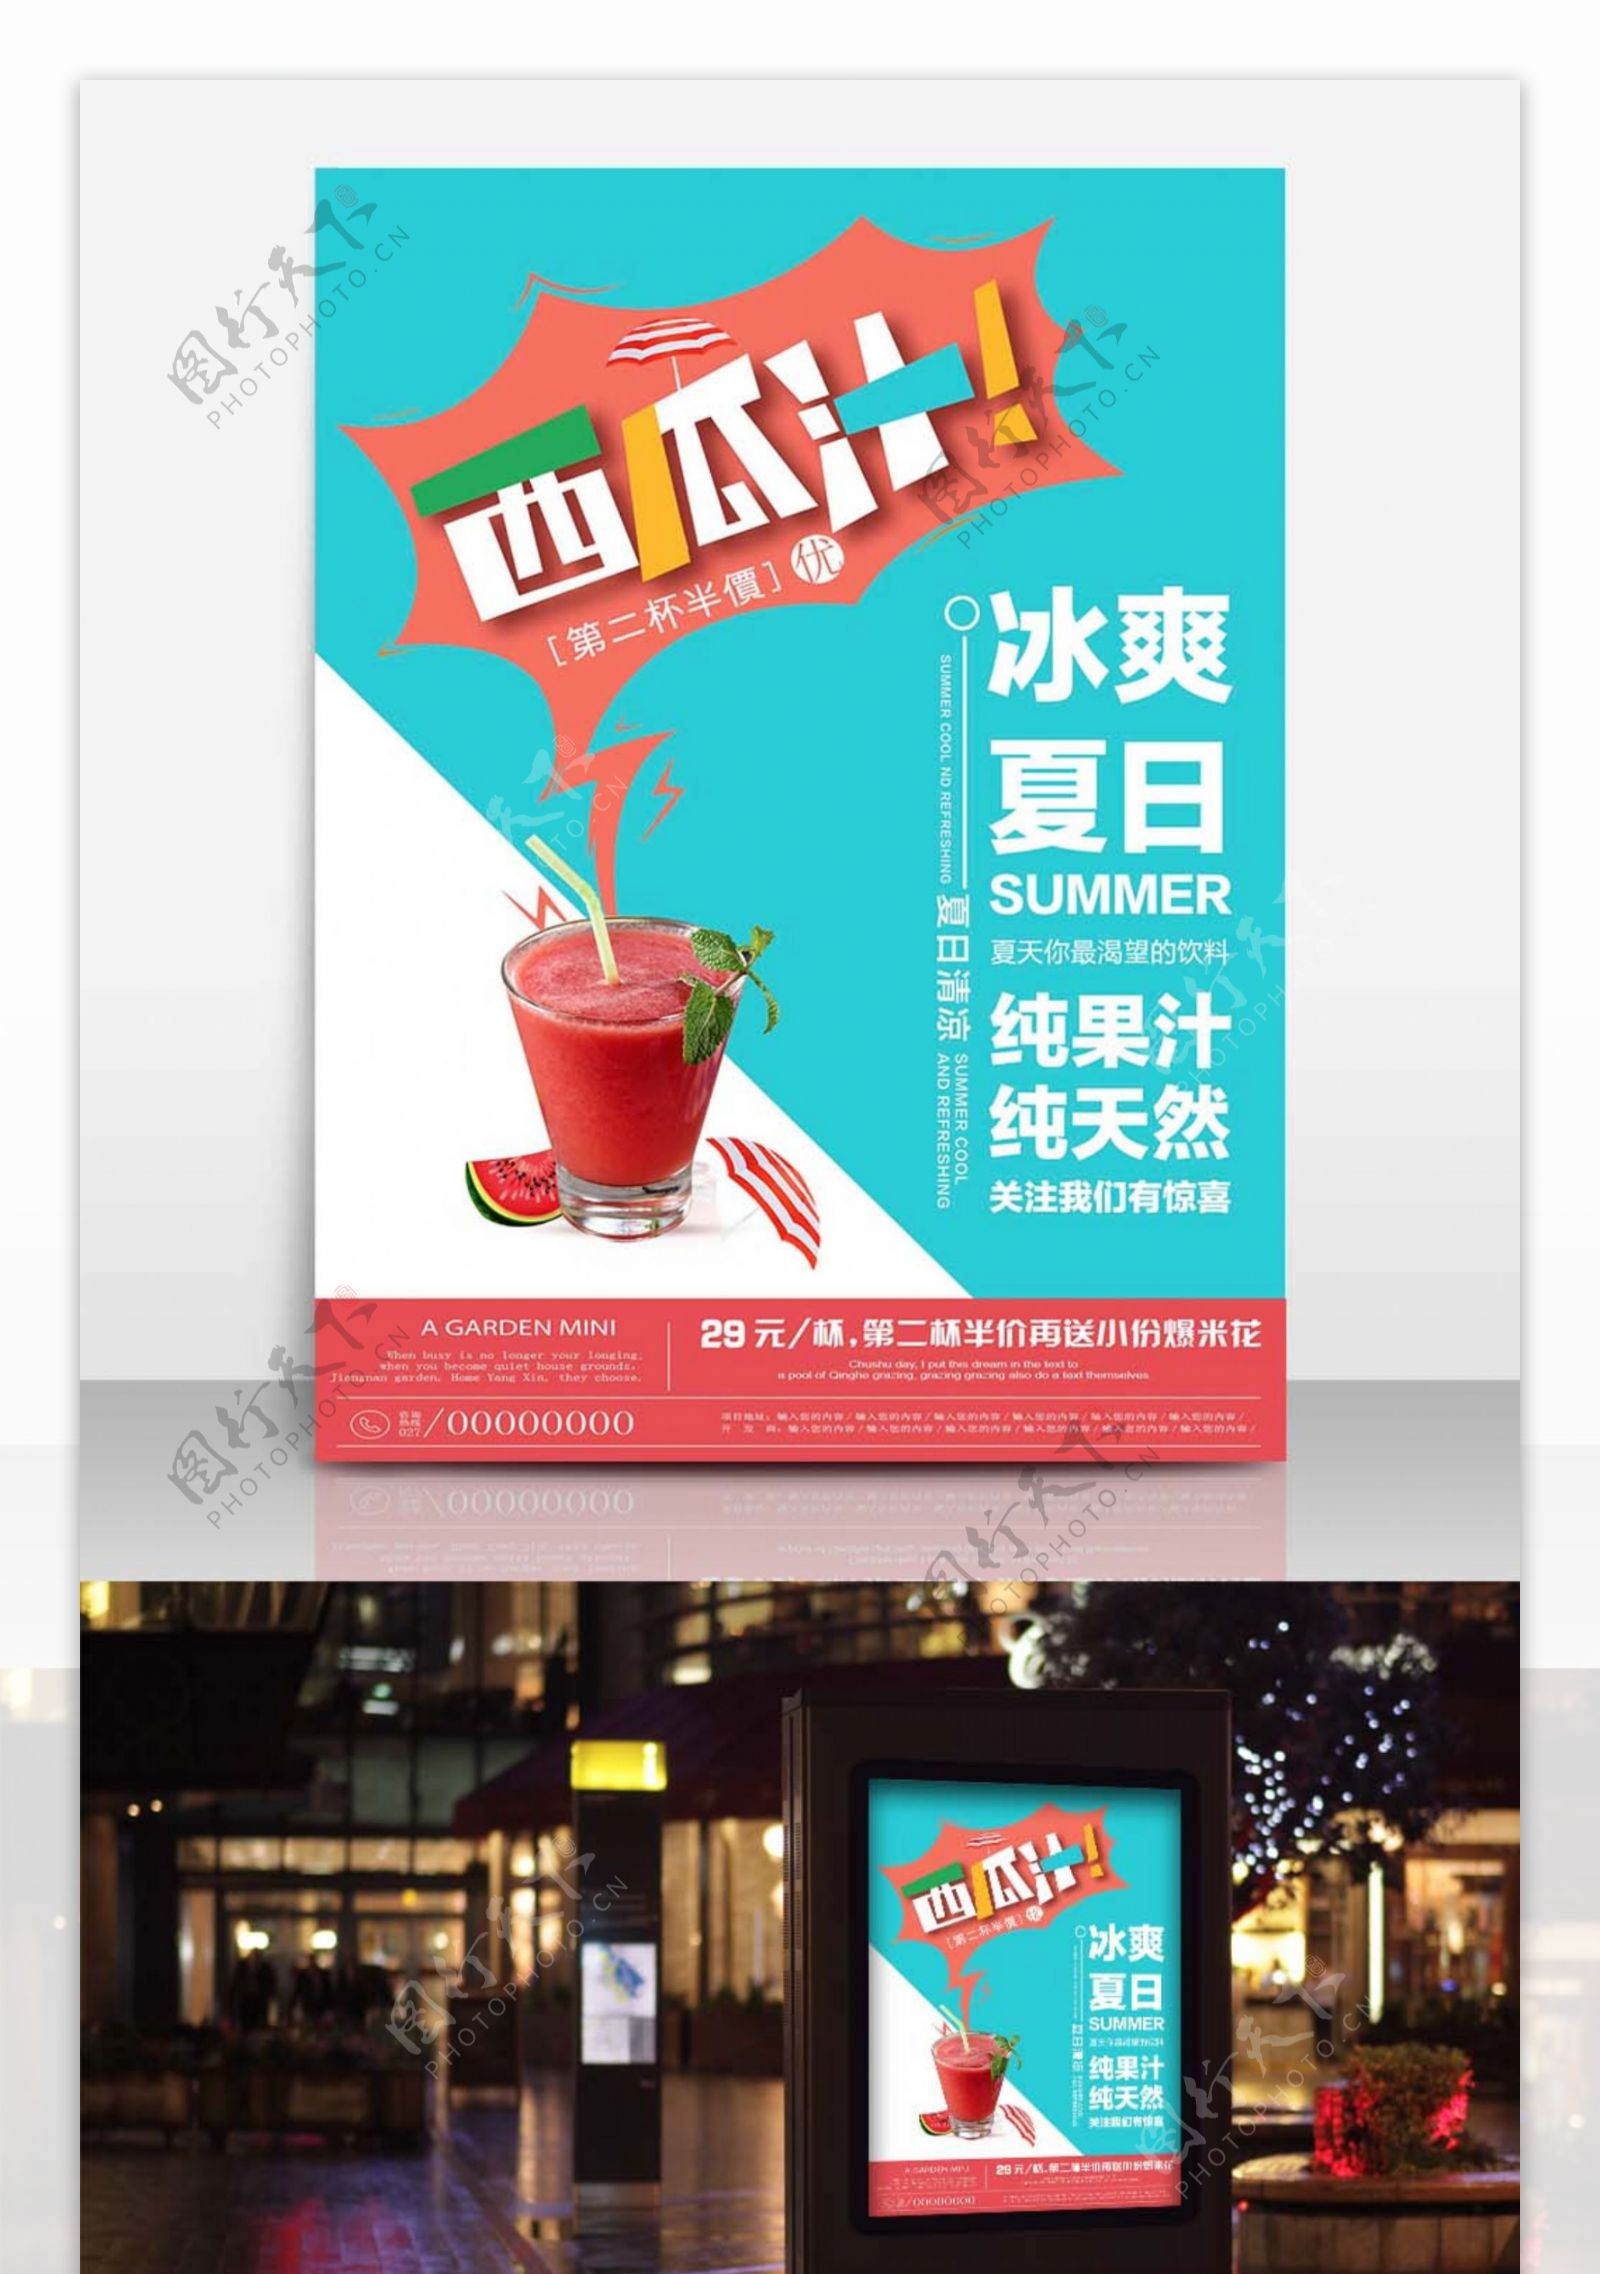 夏日饮料西瓜汁简约清新商业海报设计模板